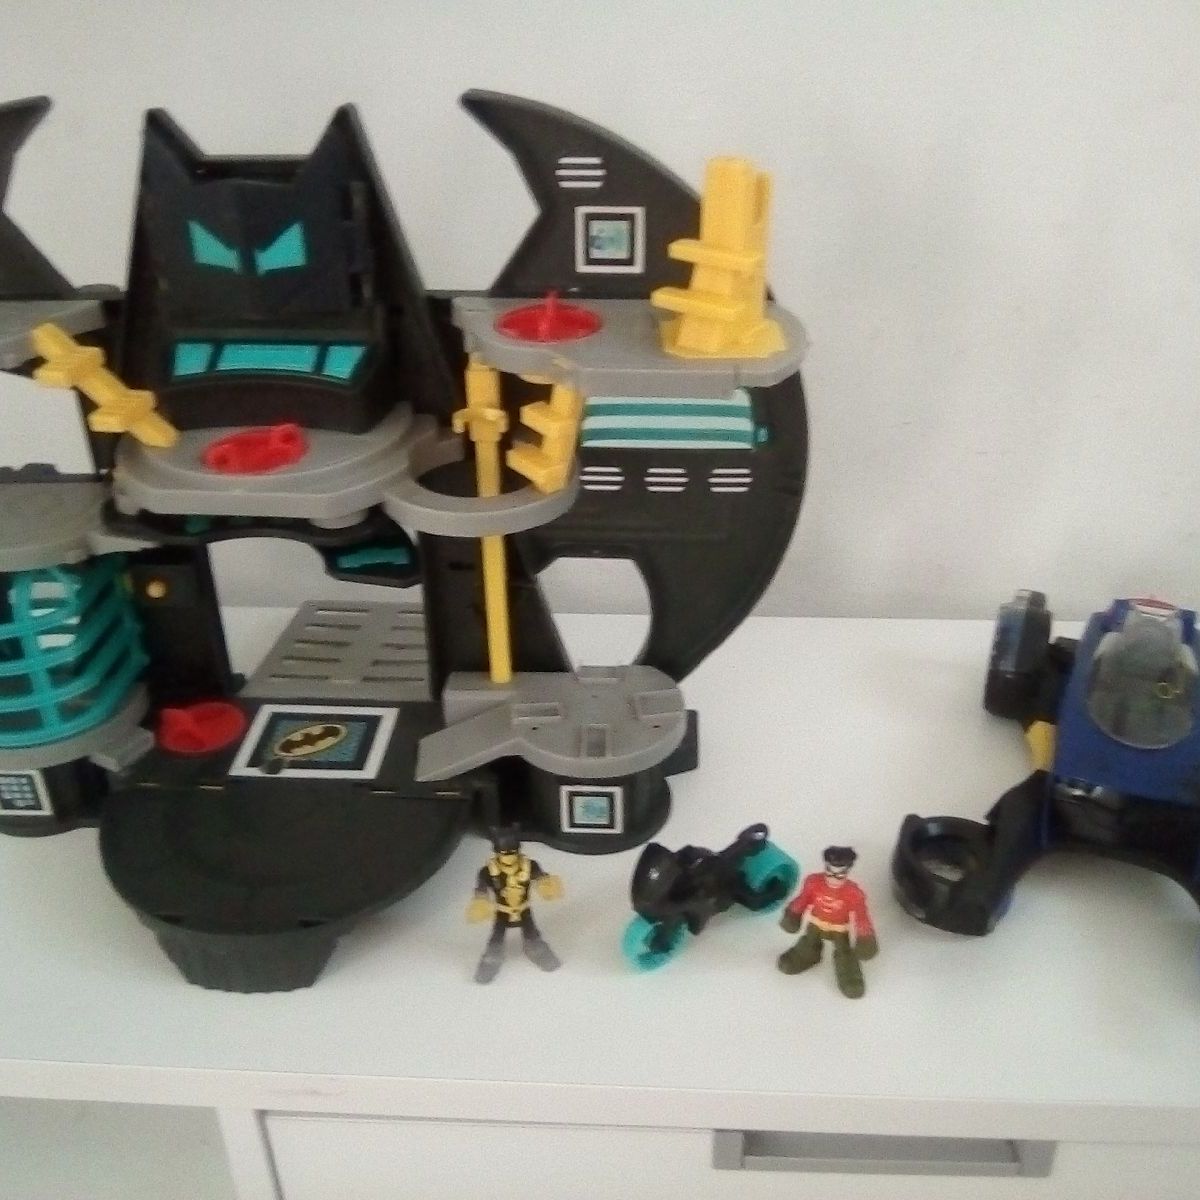 Kit De Brinquedos Com 1 Boneco Batman Flying Friends + Lego Batman